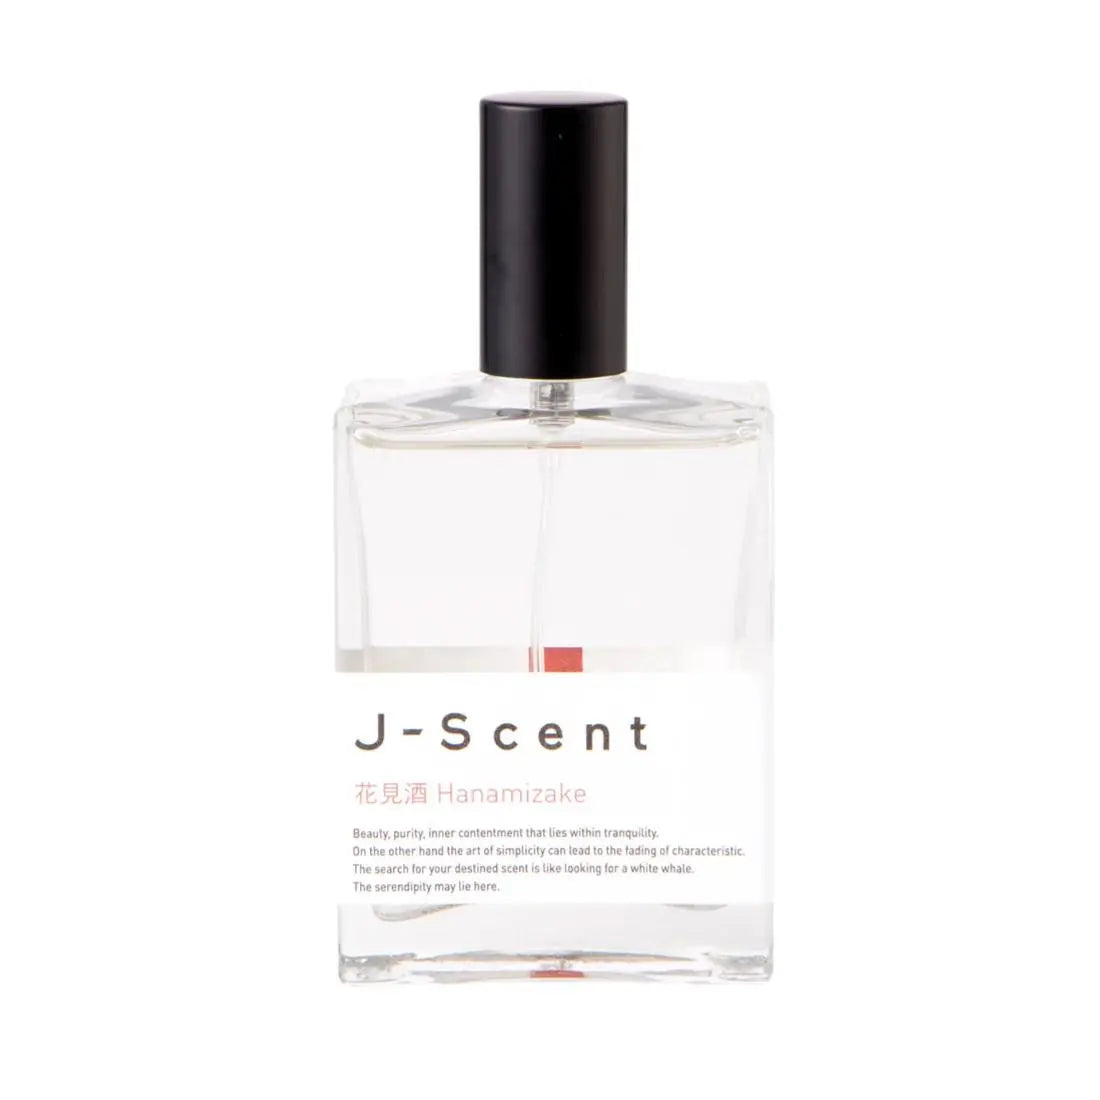 J-scent Hanamizaké - 50ml